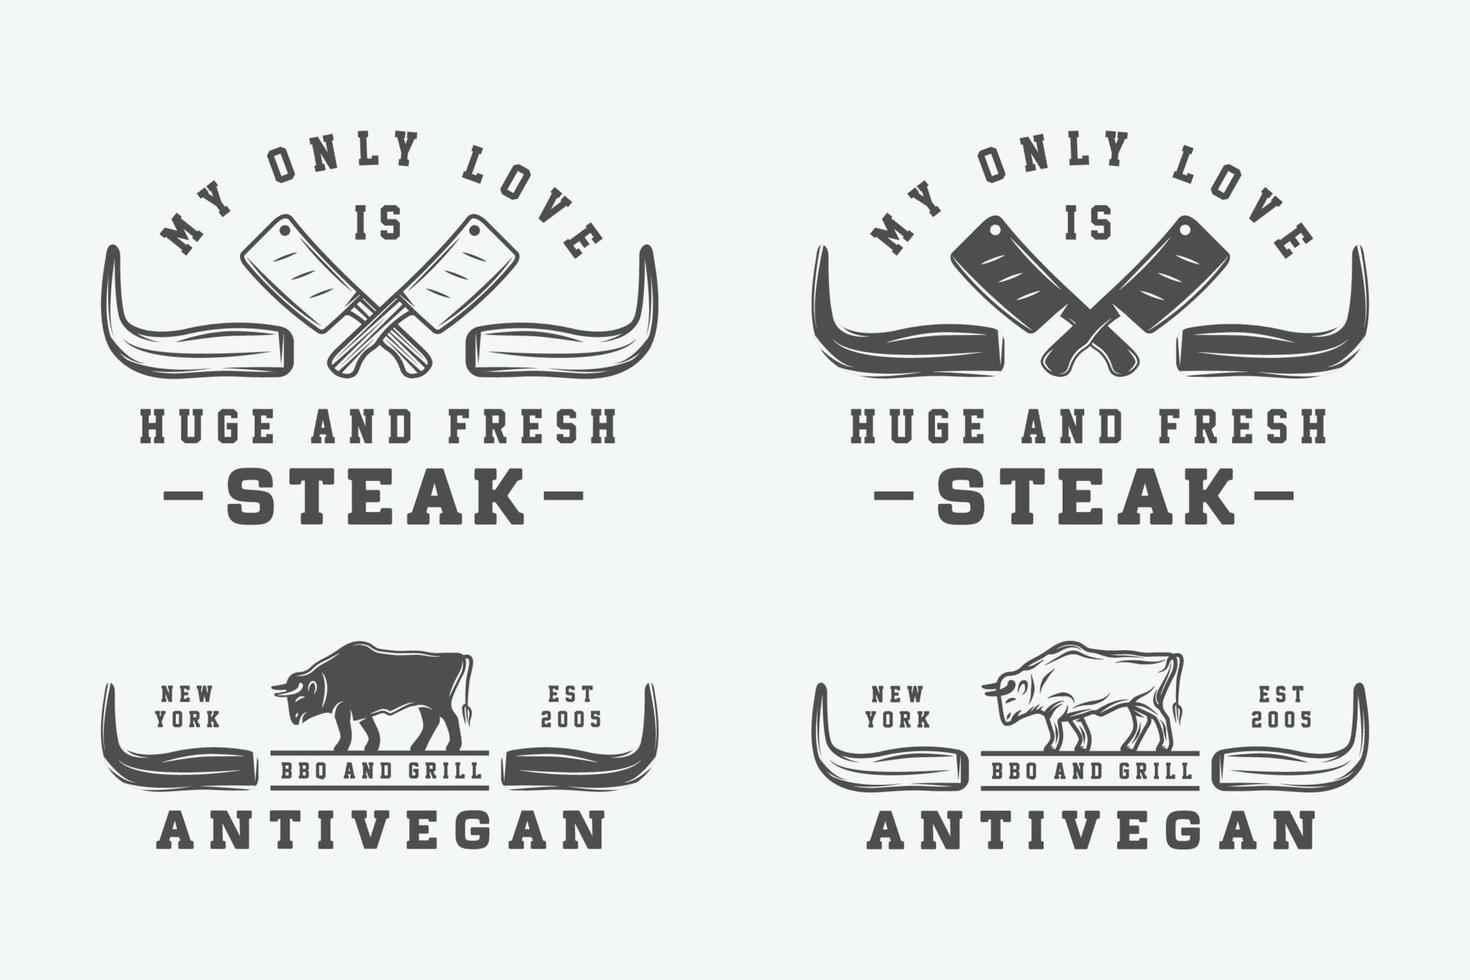 satz von vintage-metzgfleisch, steak- oder bbq-logos, emblemen, abzeichen, etiketten. monochrome Grafik. Vektor-Illustration. vektor